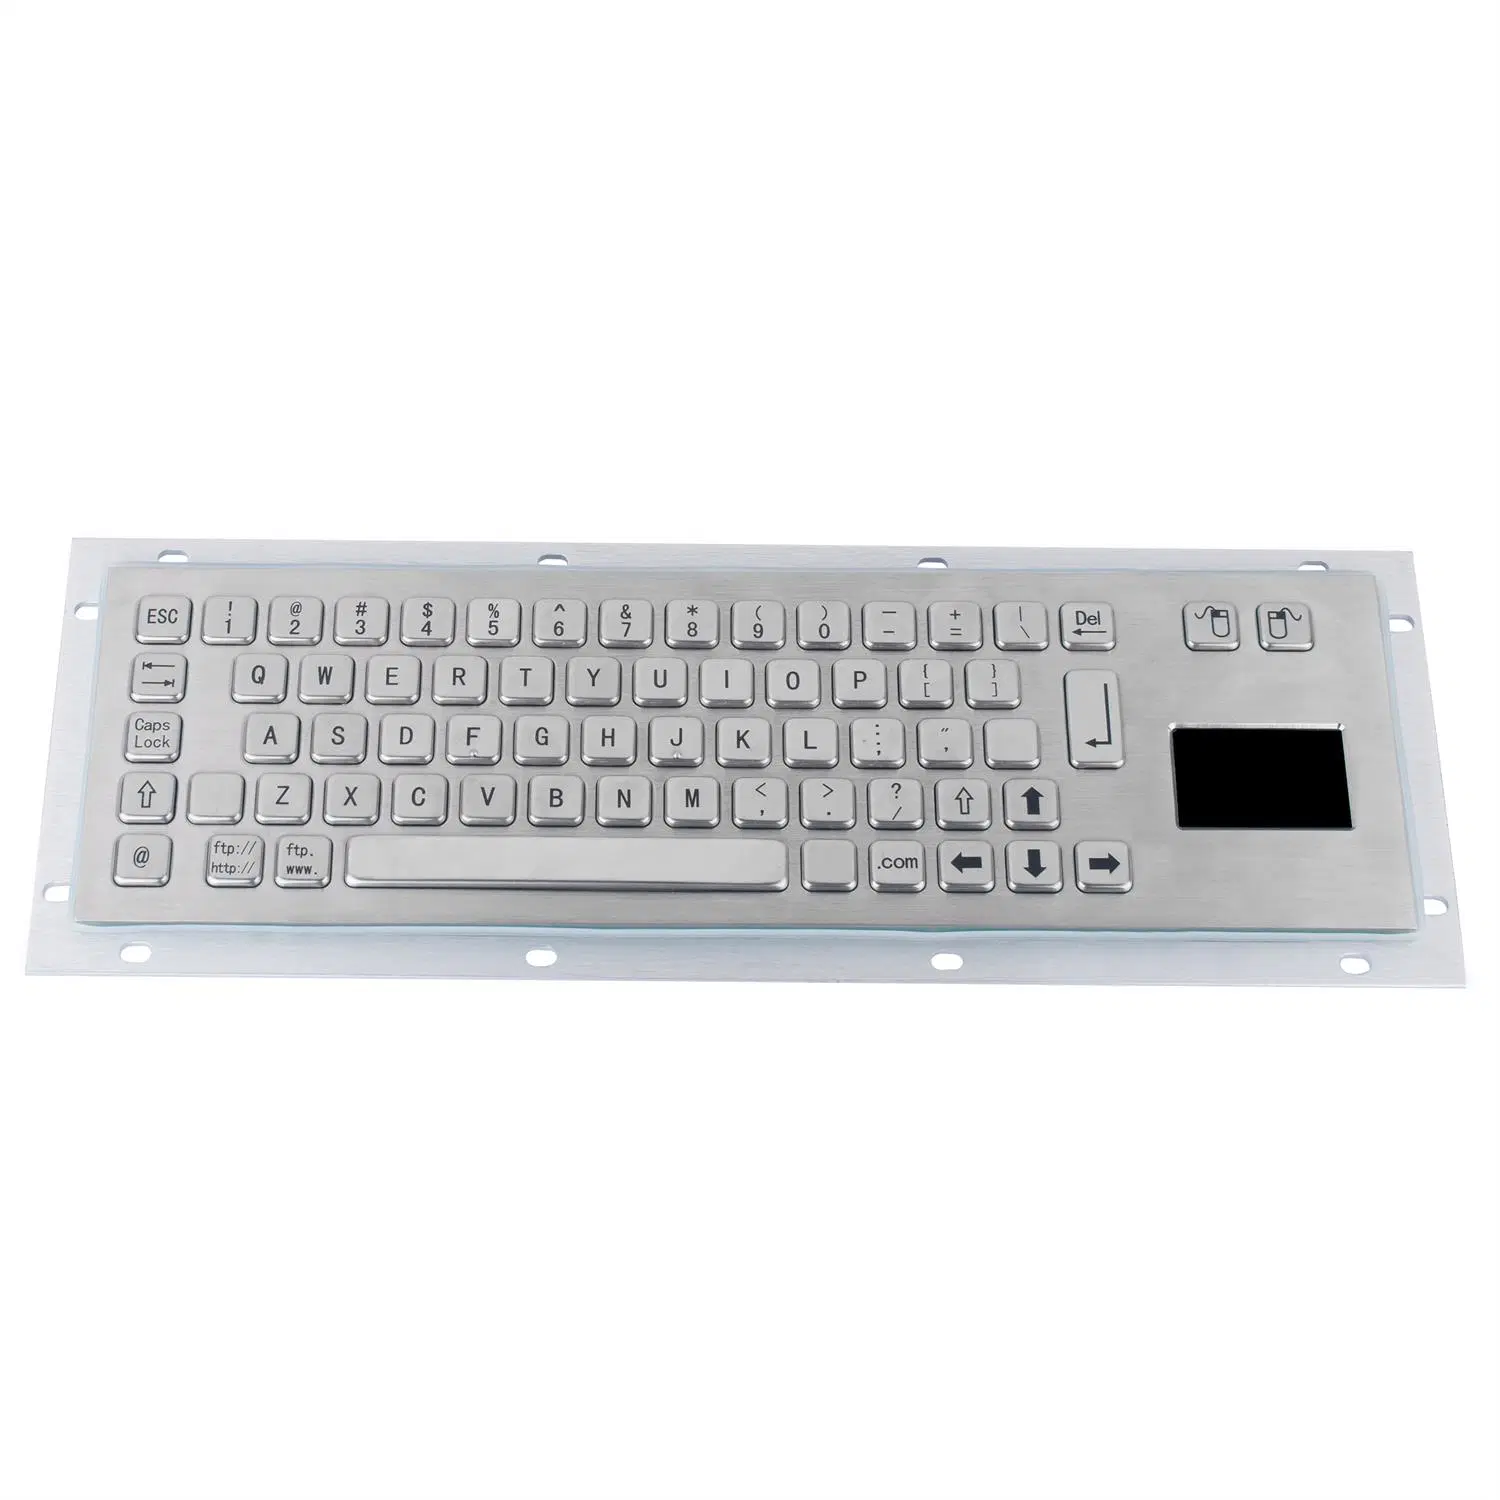 Equipo industrial y accesorios Control de teclado de metal inoxidable